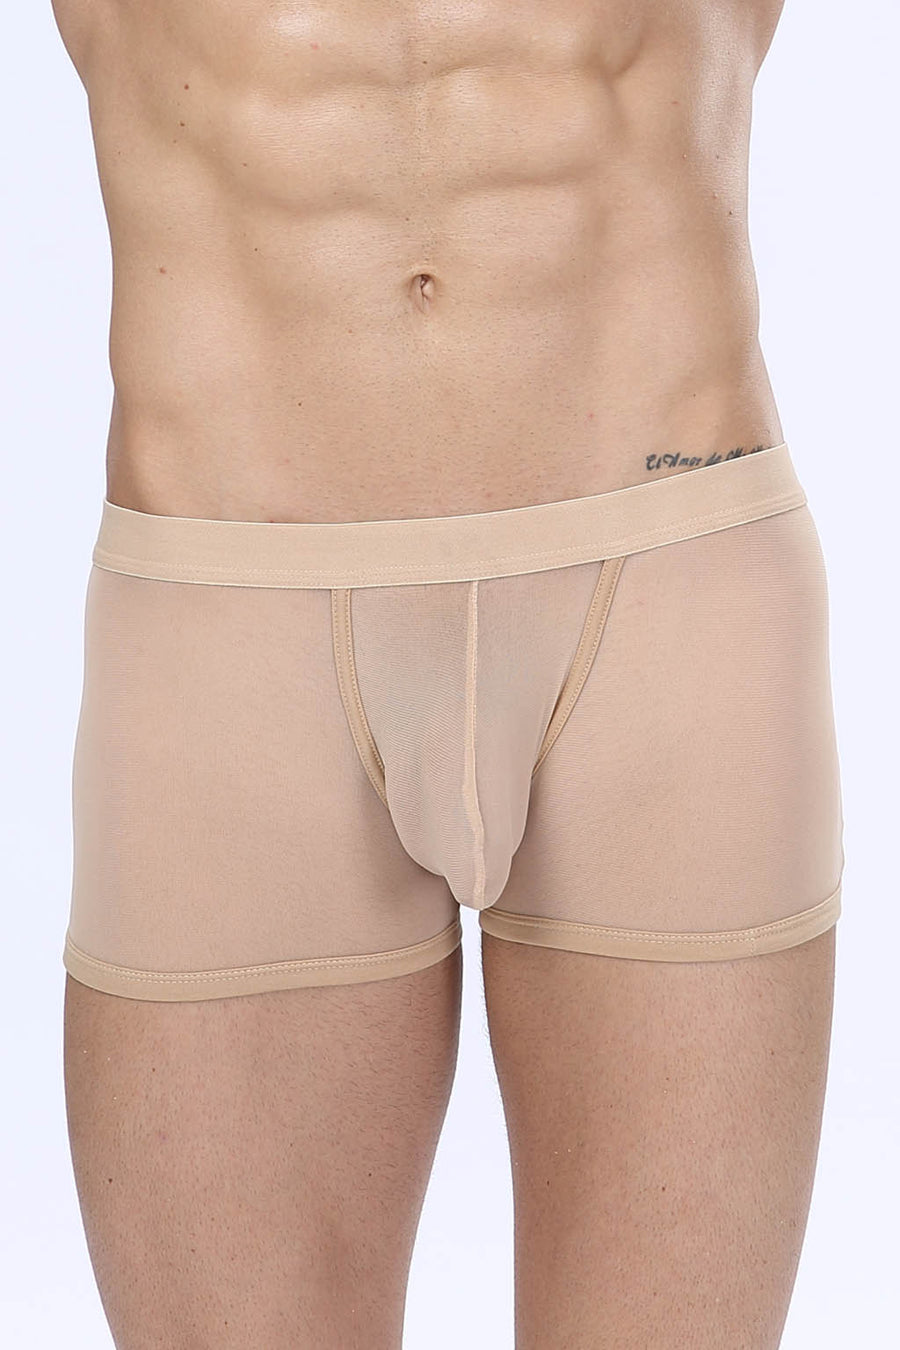 Manview Mens Sheer Net Boxer Lowrise Pouch Underwear – Bodywear